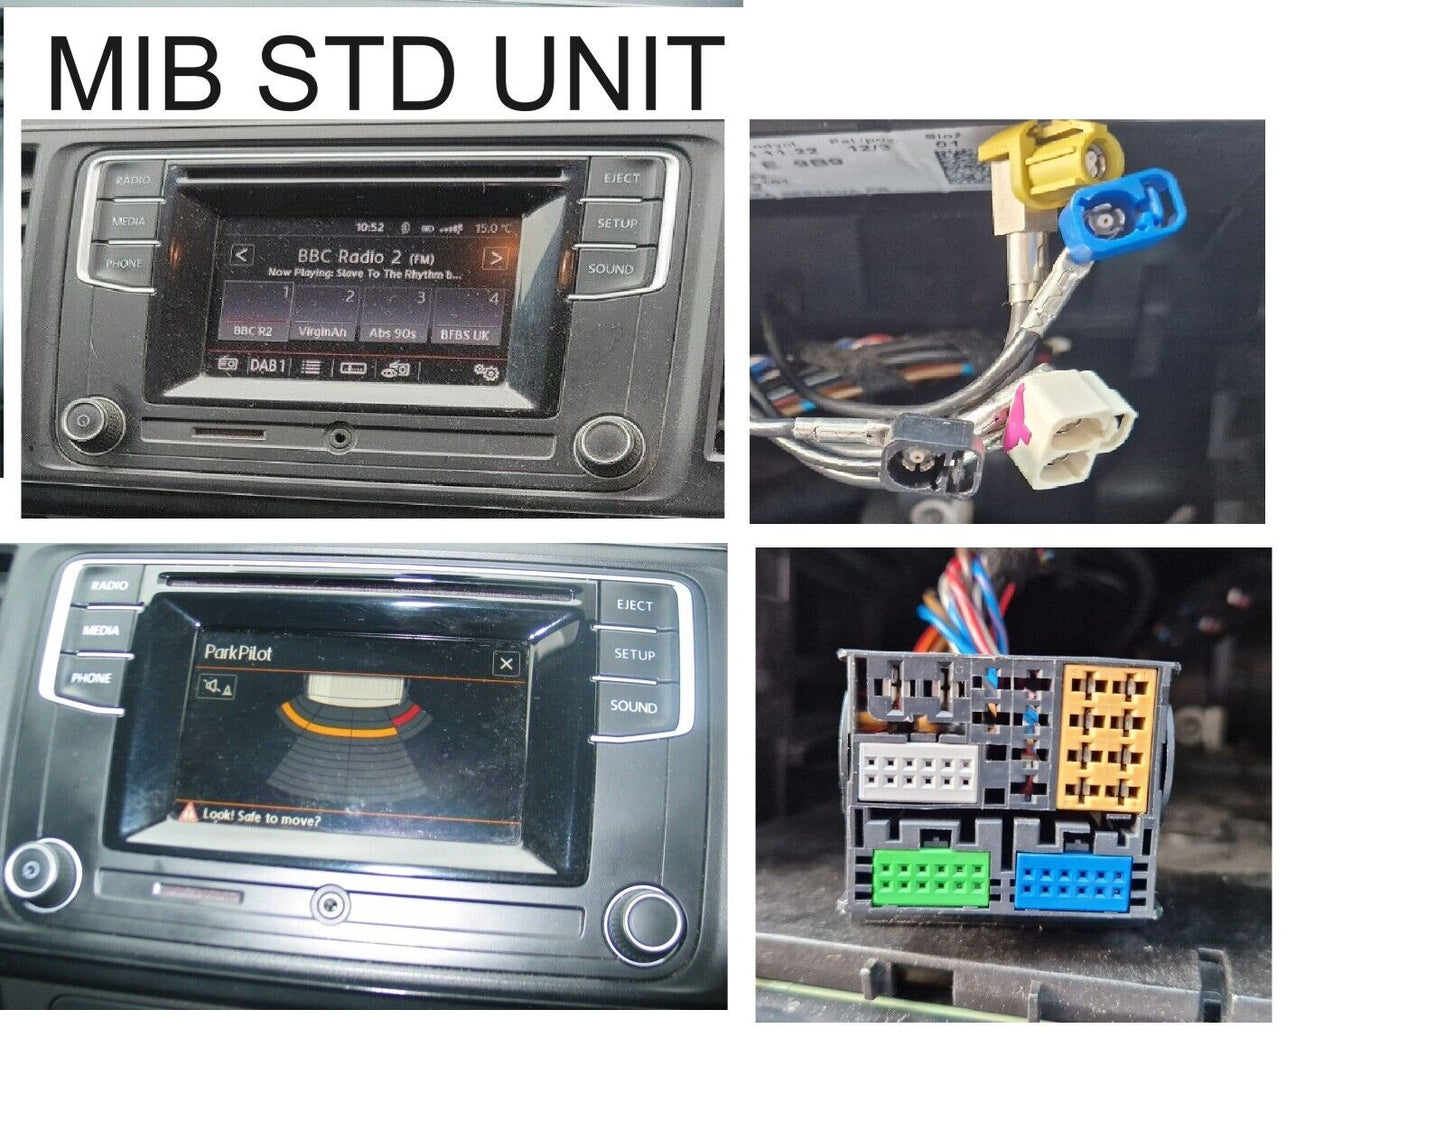 VW T6 BLUETOOTH CARPLAY DAB HD DVD SD GPS SAT NAV USB ANDRIOD MIB NEW IN